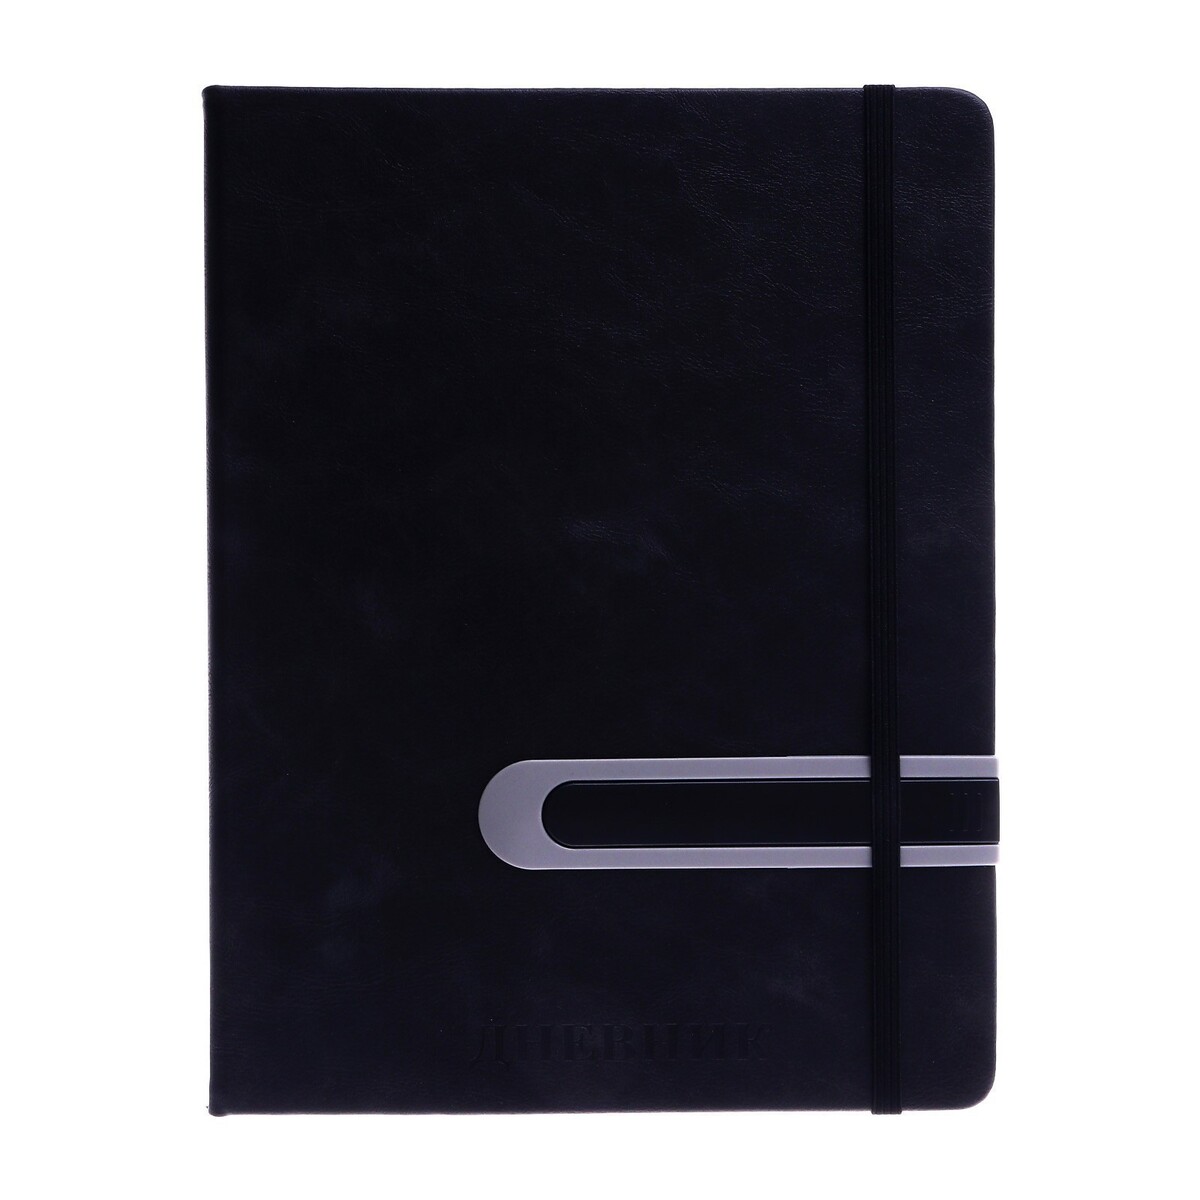 Дневник школьный, 5-11 класс, обложка пвх, с ручкой, на резинке No brand, цвет черный 06933423 - фото 1